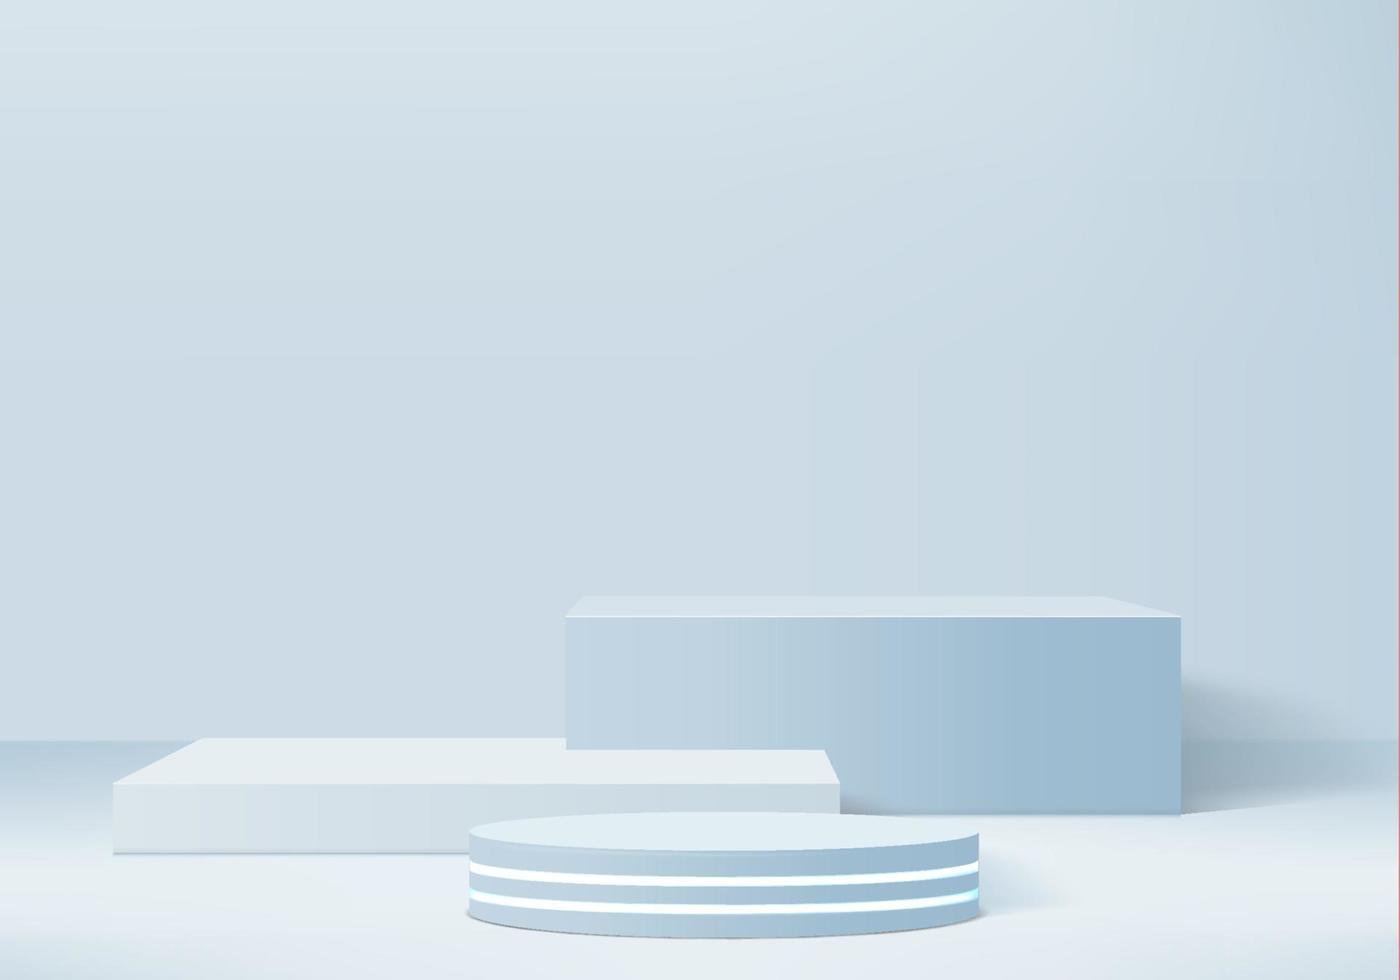 cilindro cena mínima abstrata com plataforma geométrica. fundo do verão vetor renderização 3d com pódio. estande para mostrar produtos cosméticos. vitrine de palco em pedestal moderno 3d estúdio azul pastel